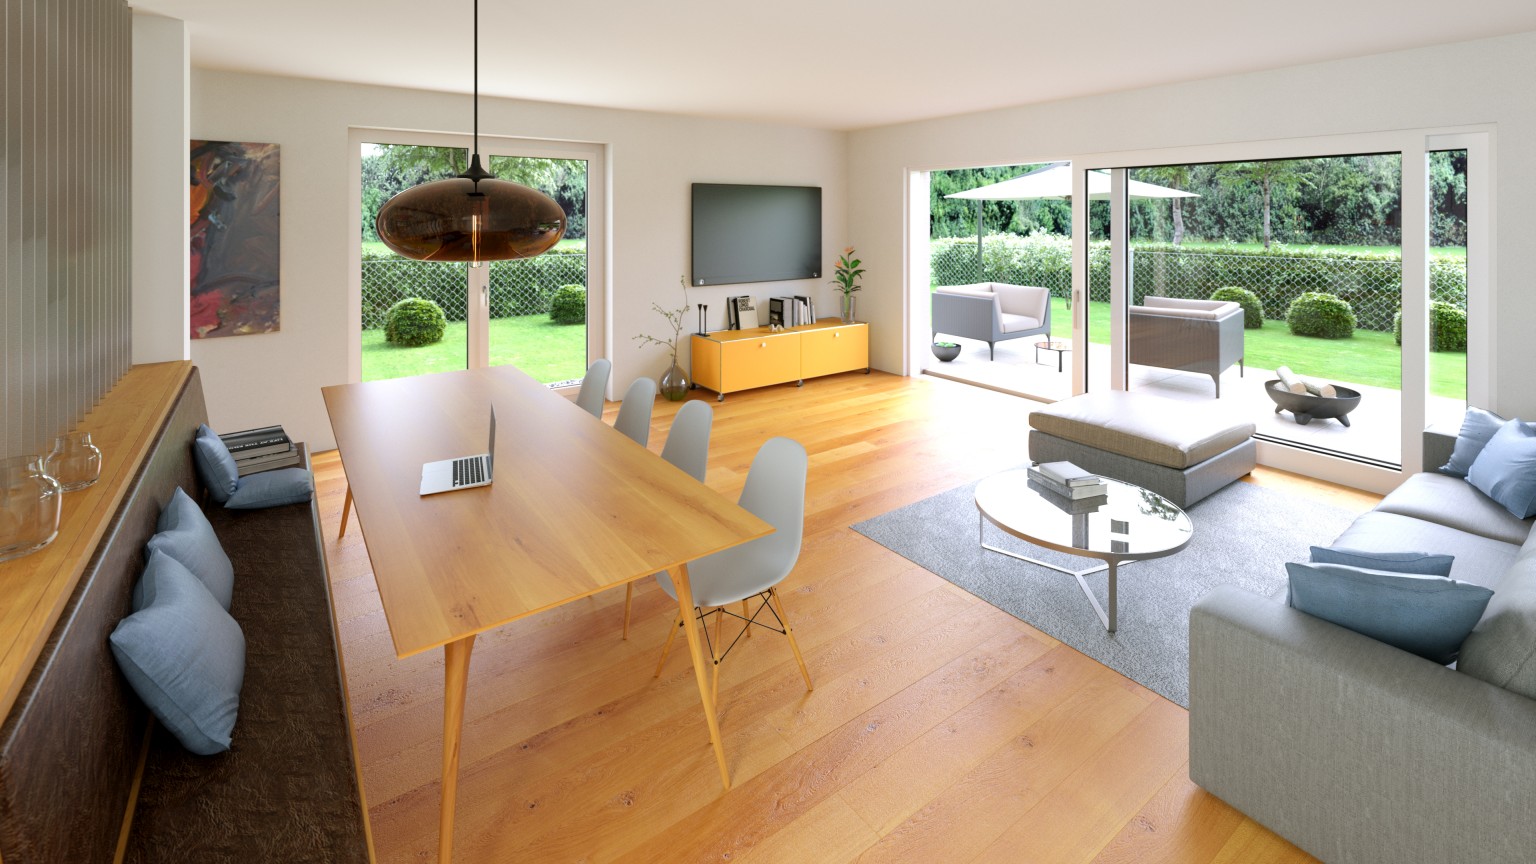 Wohnzimmer mit Holzboden, Esstisch und große Fensterfronten mit Blick in den Garten